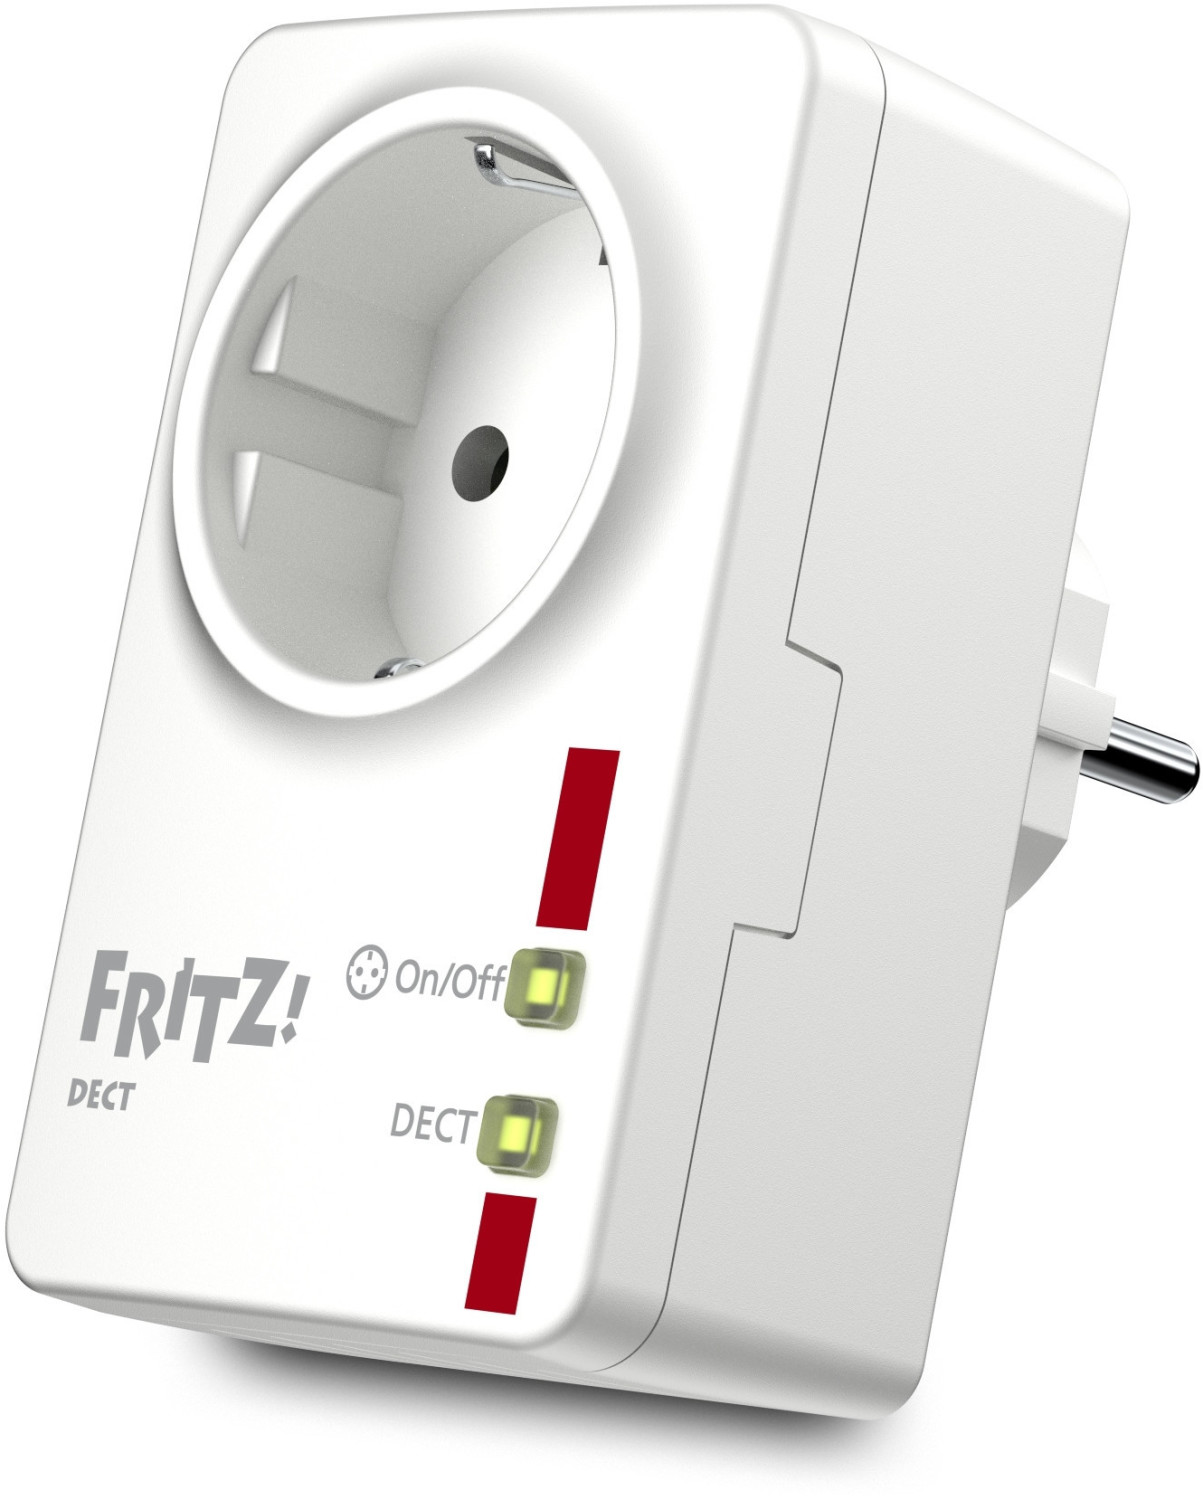 Preis-Check: Smart Heizen: Fritz-Thermostate-Dreierpack zum Deal-Preis 